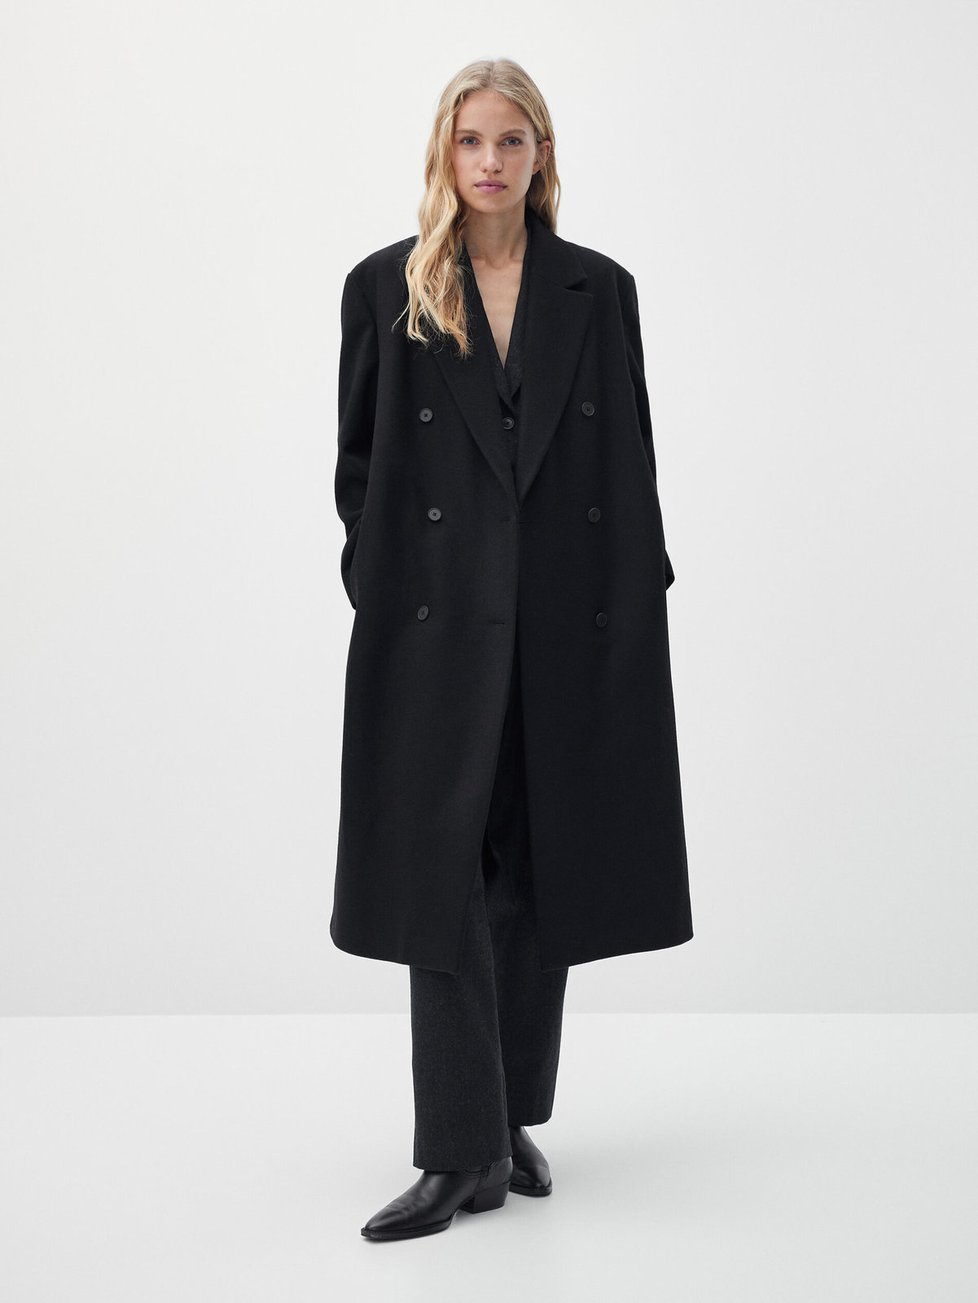 Kabát Massimo Dutti, původní cena 6595 Kč, po slevě 2899 Kč